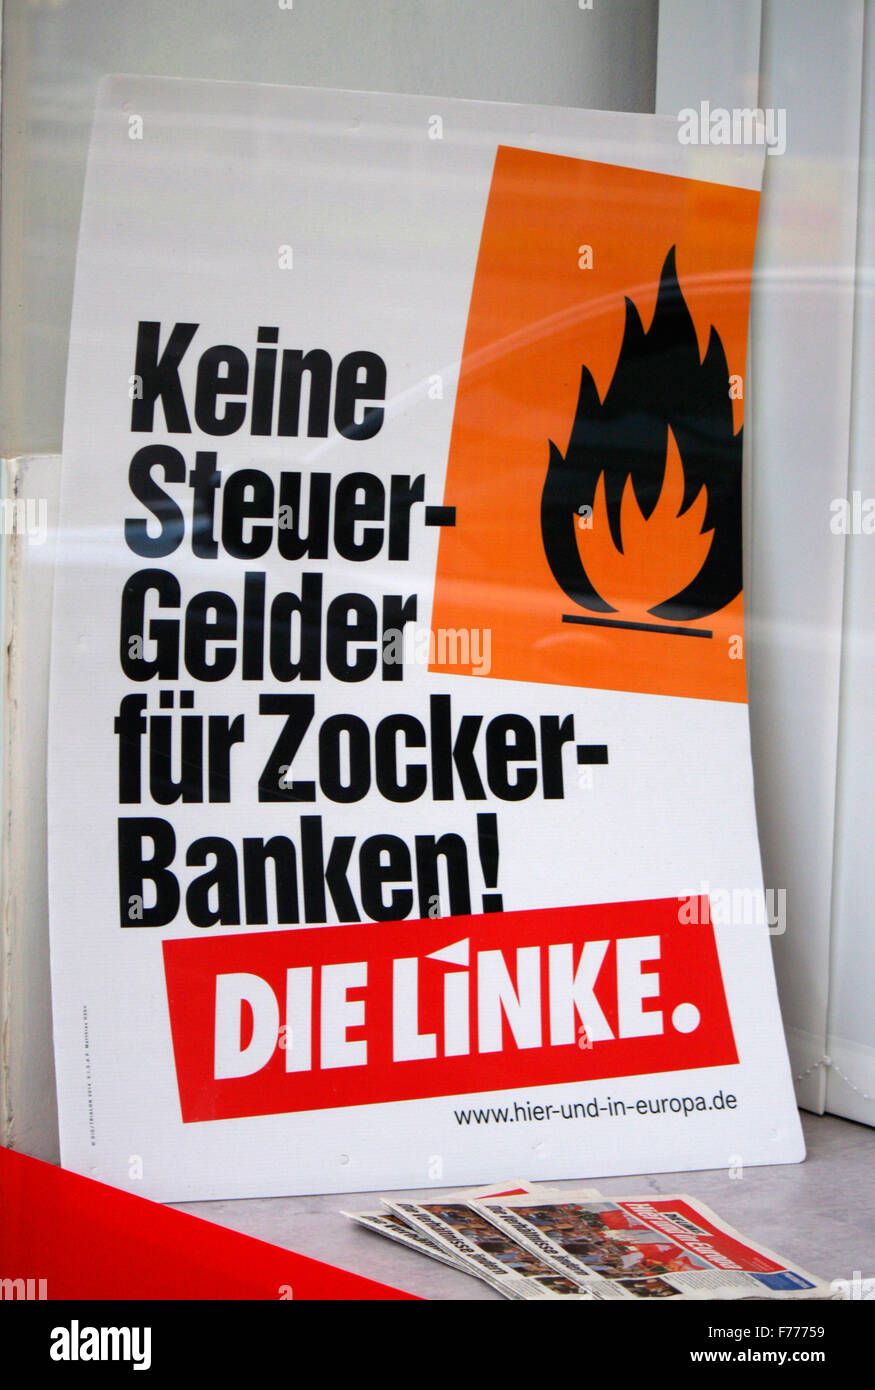 " Keine Steuergelder fuer Zoccurbanken', die Linke - Wahlplakate zur Europawahl anstehenden, Berlino. Foto Stock